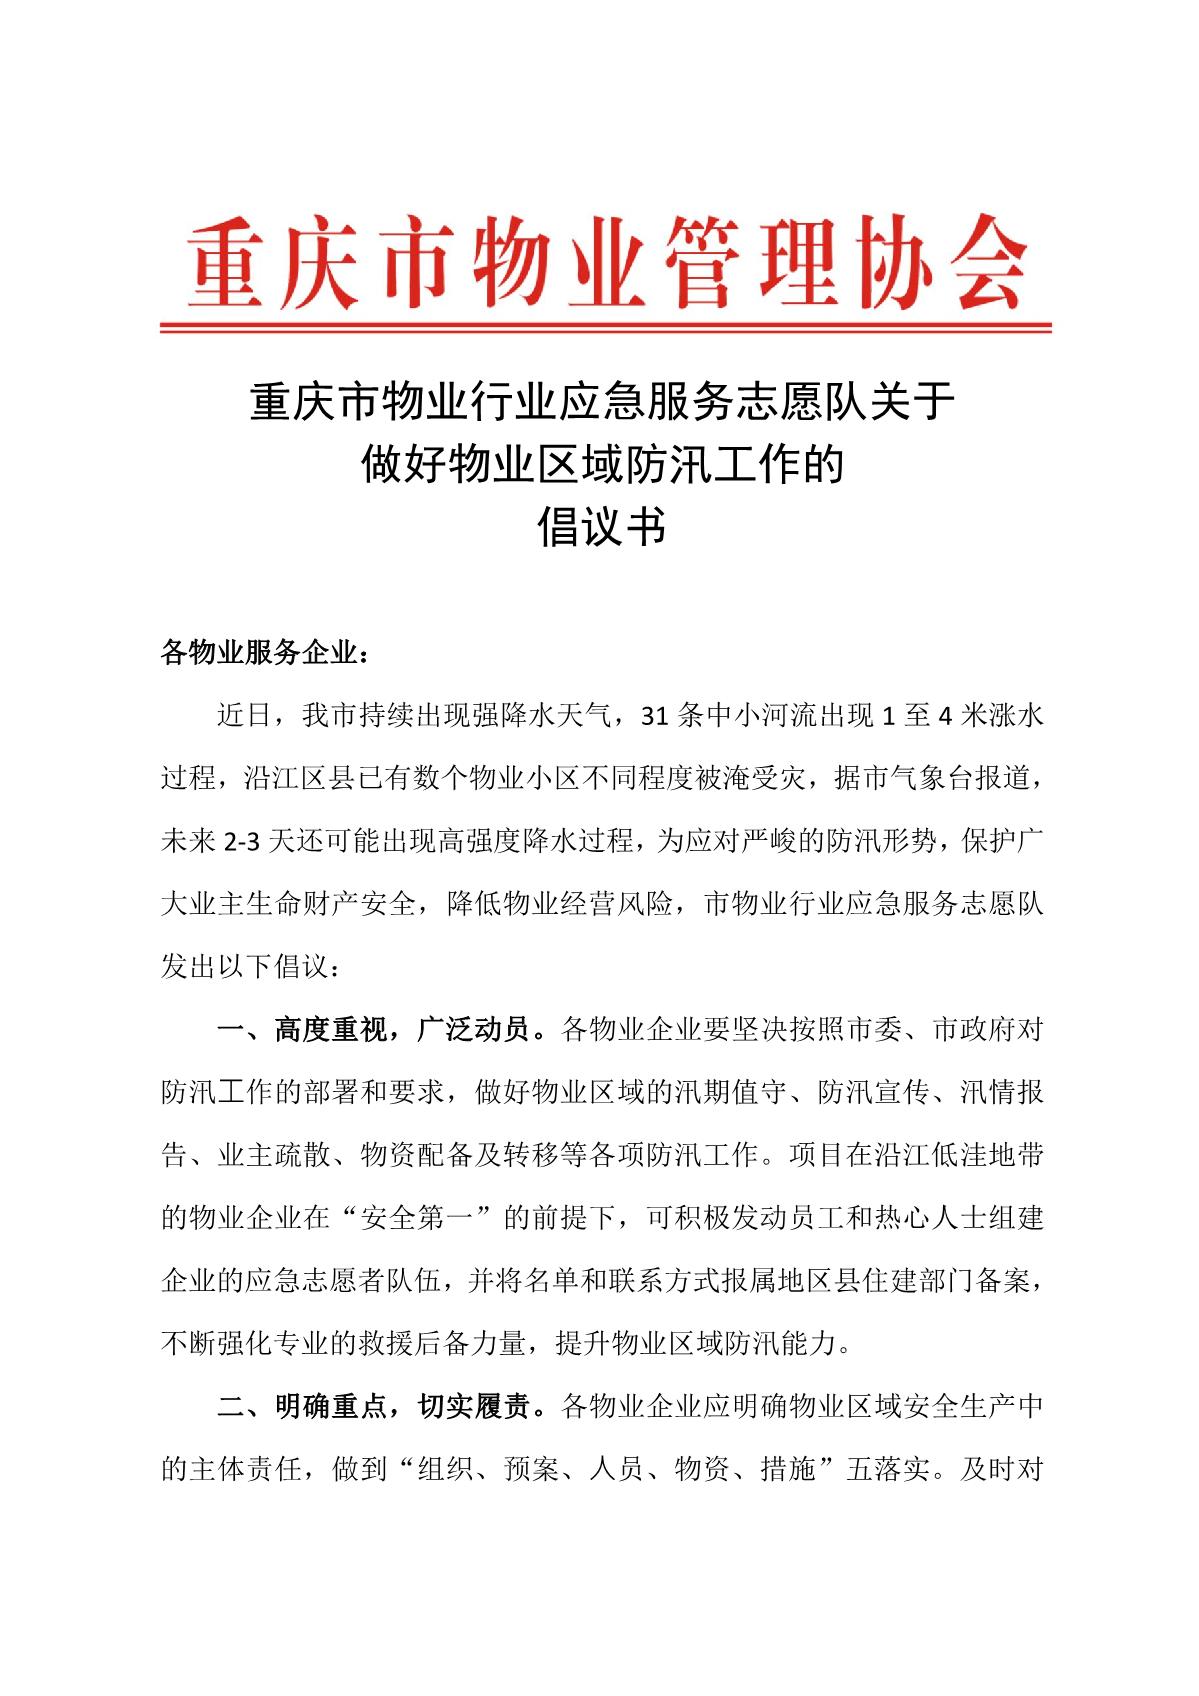 重庆市物业行业应急服务志愿队关于做好物业区域防汛工作的倡议书_1.JPG